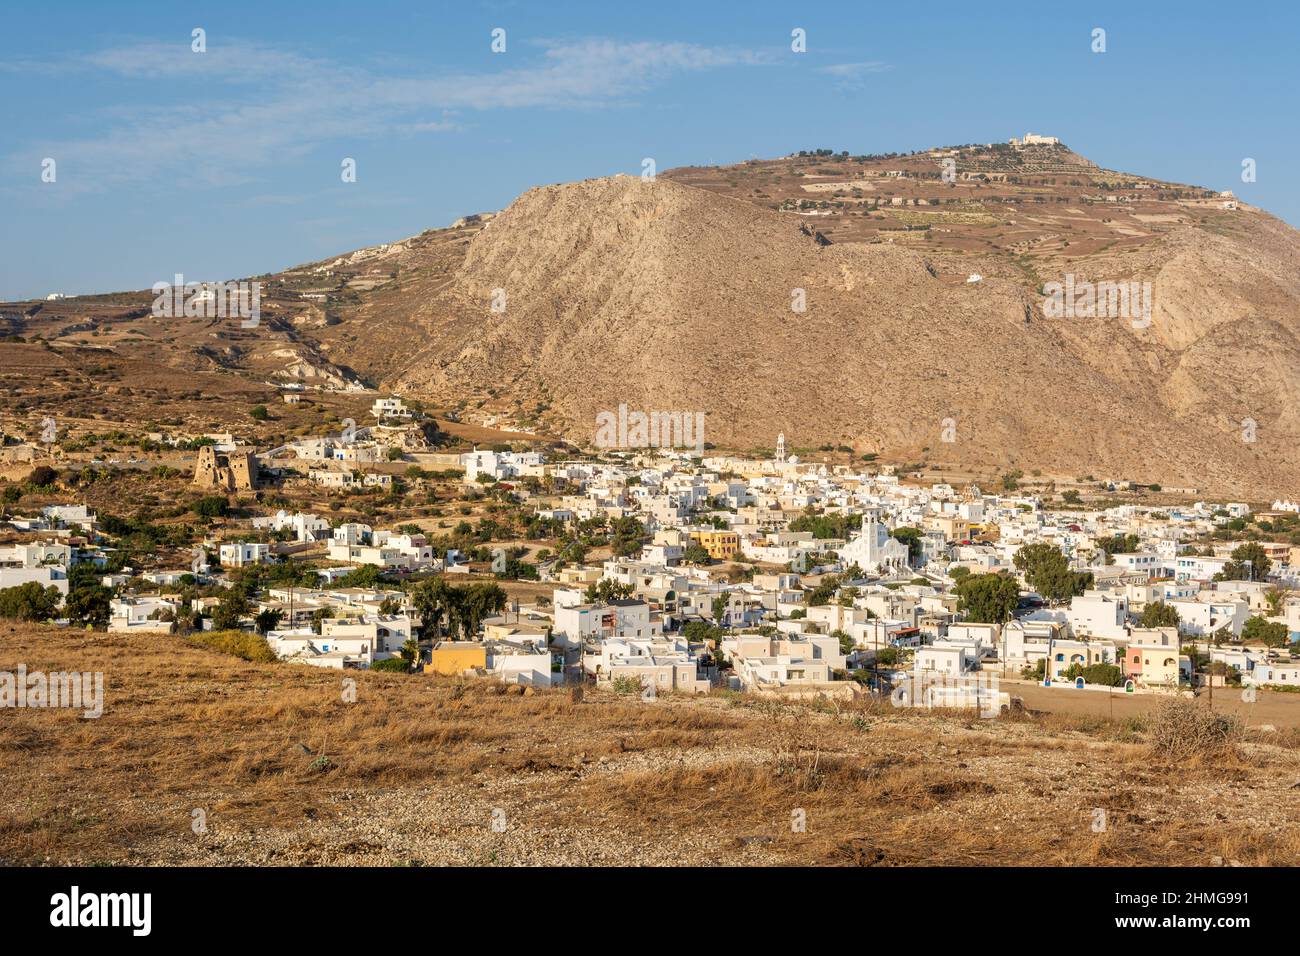 Emporio, le plus grand village de Santorin, situé dans la partie sud de l'île, au pied de la montagne Profitis Ilias. Cyclades, Grèce Banque D'Images